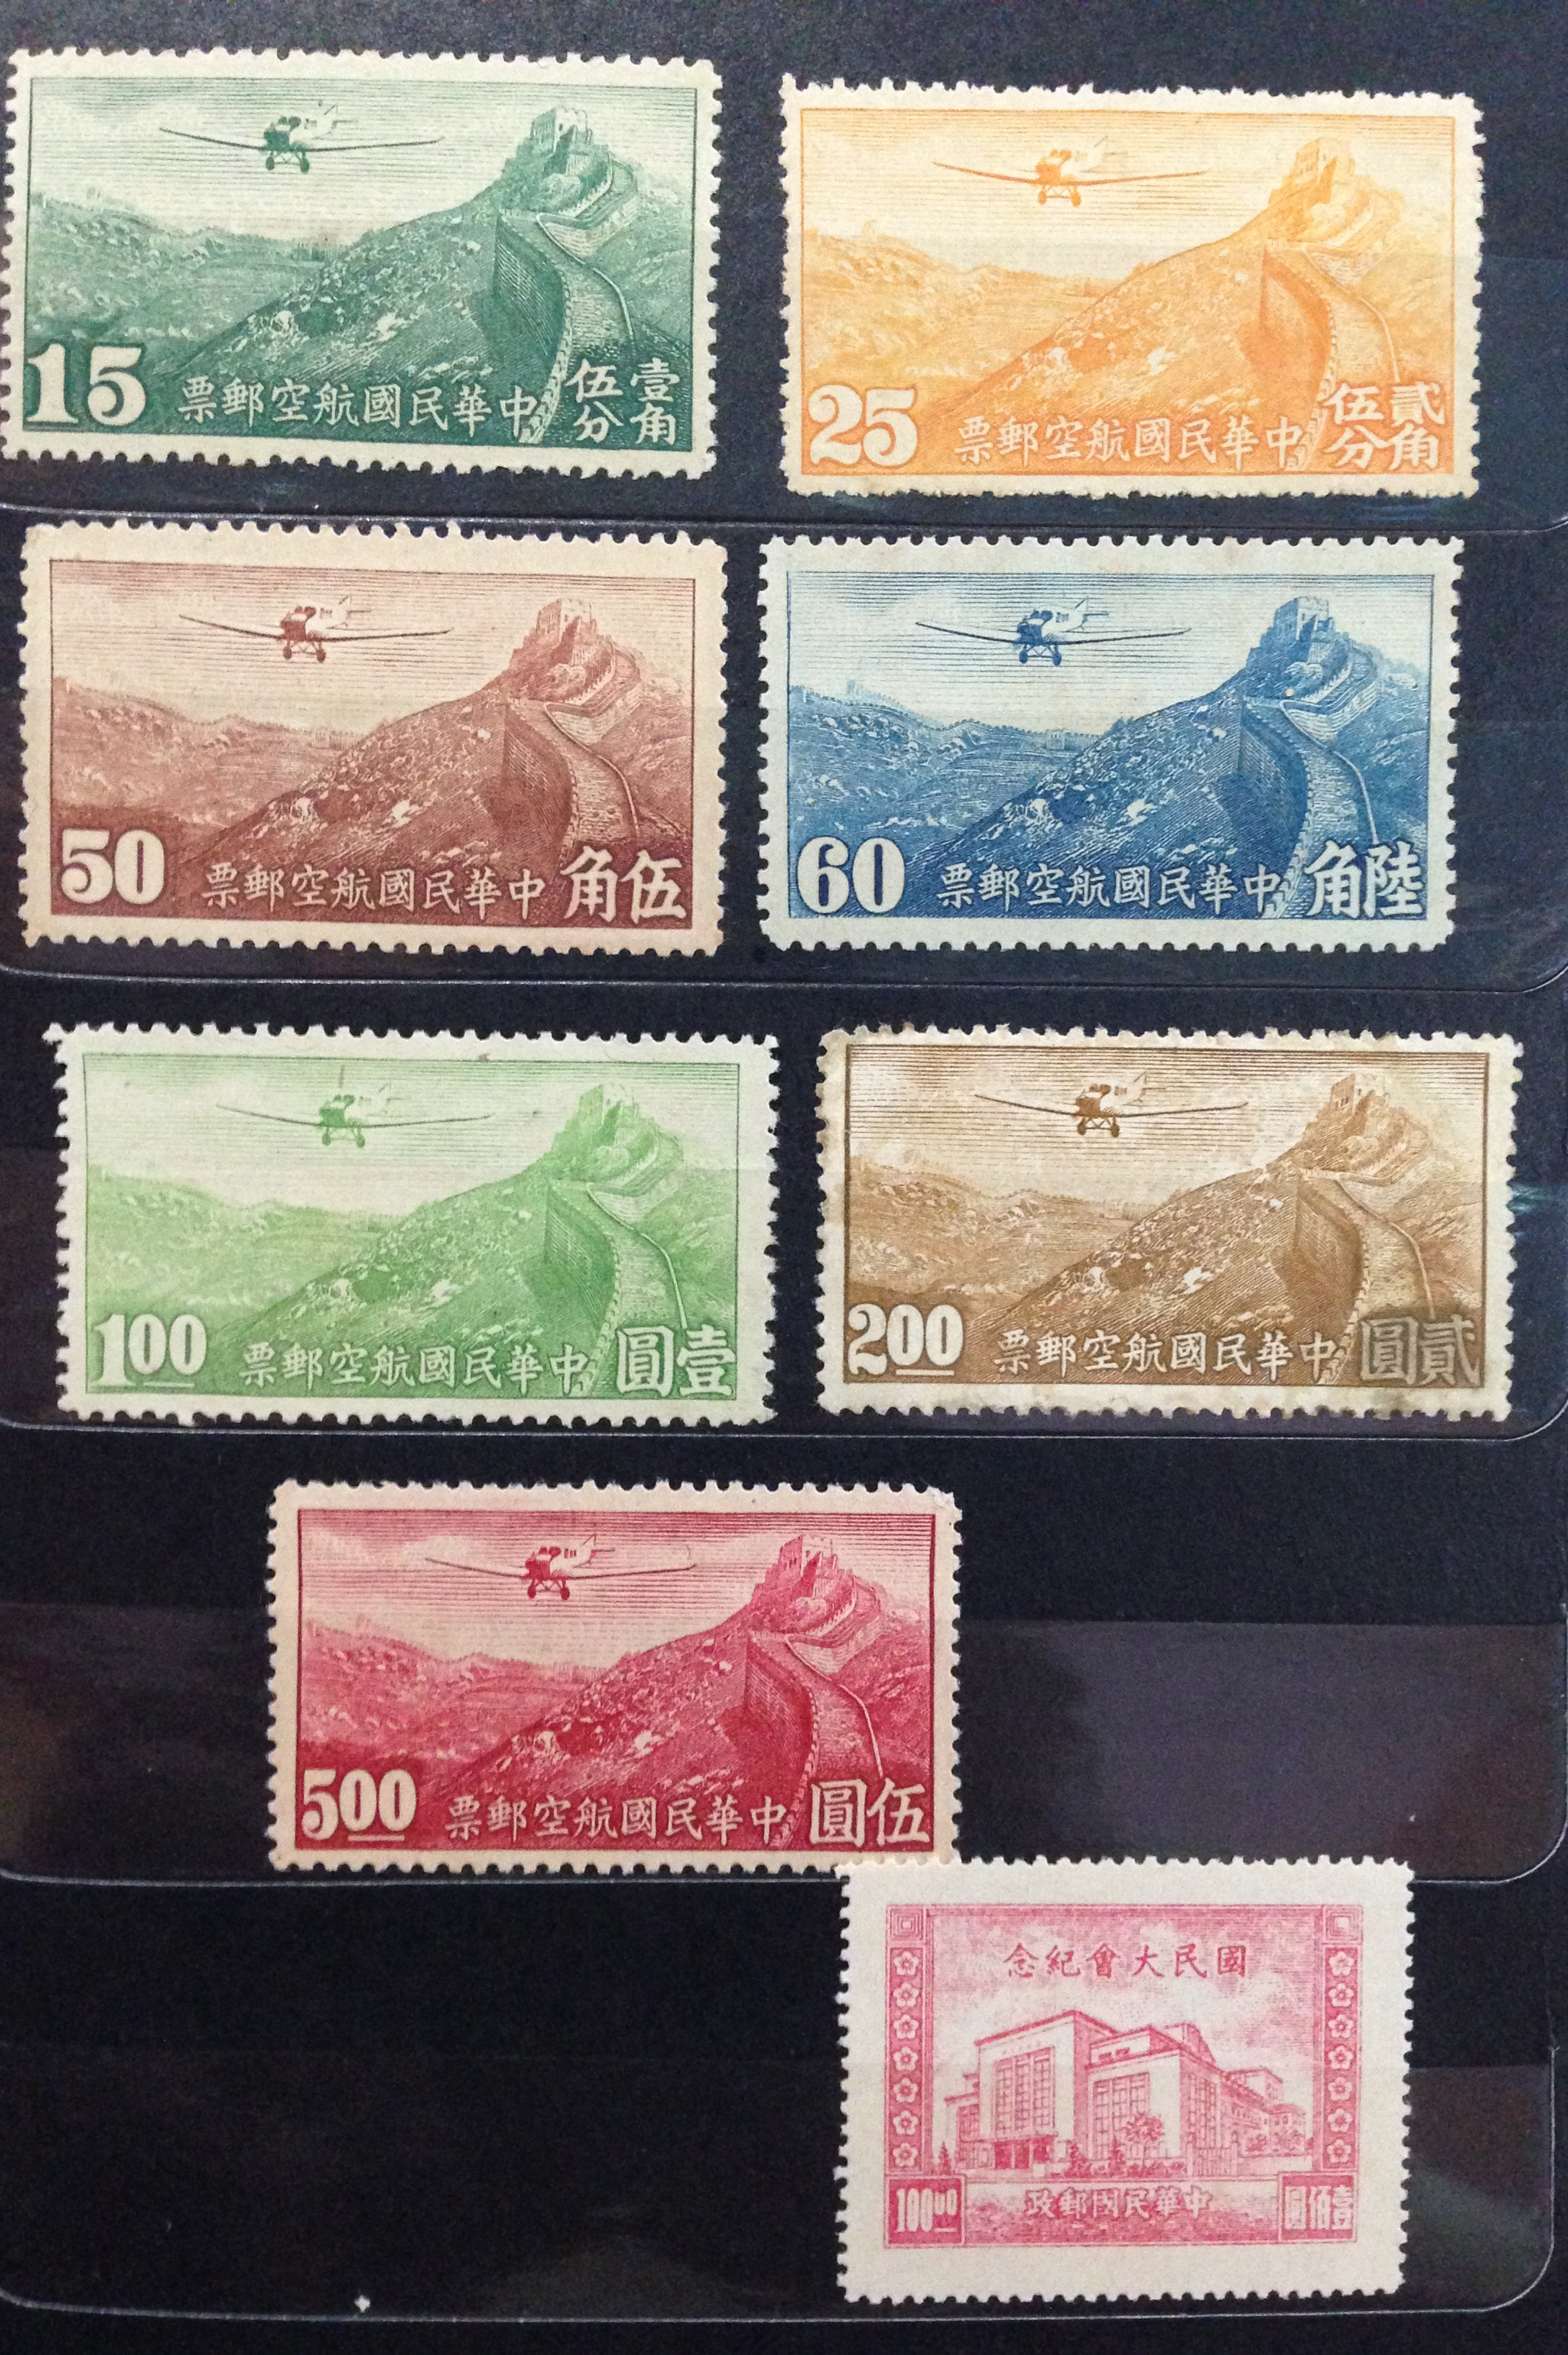 价值连城的大龙邮票，被誉为最贵的中国邮票 - 知乎